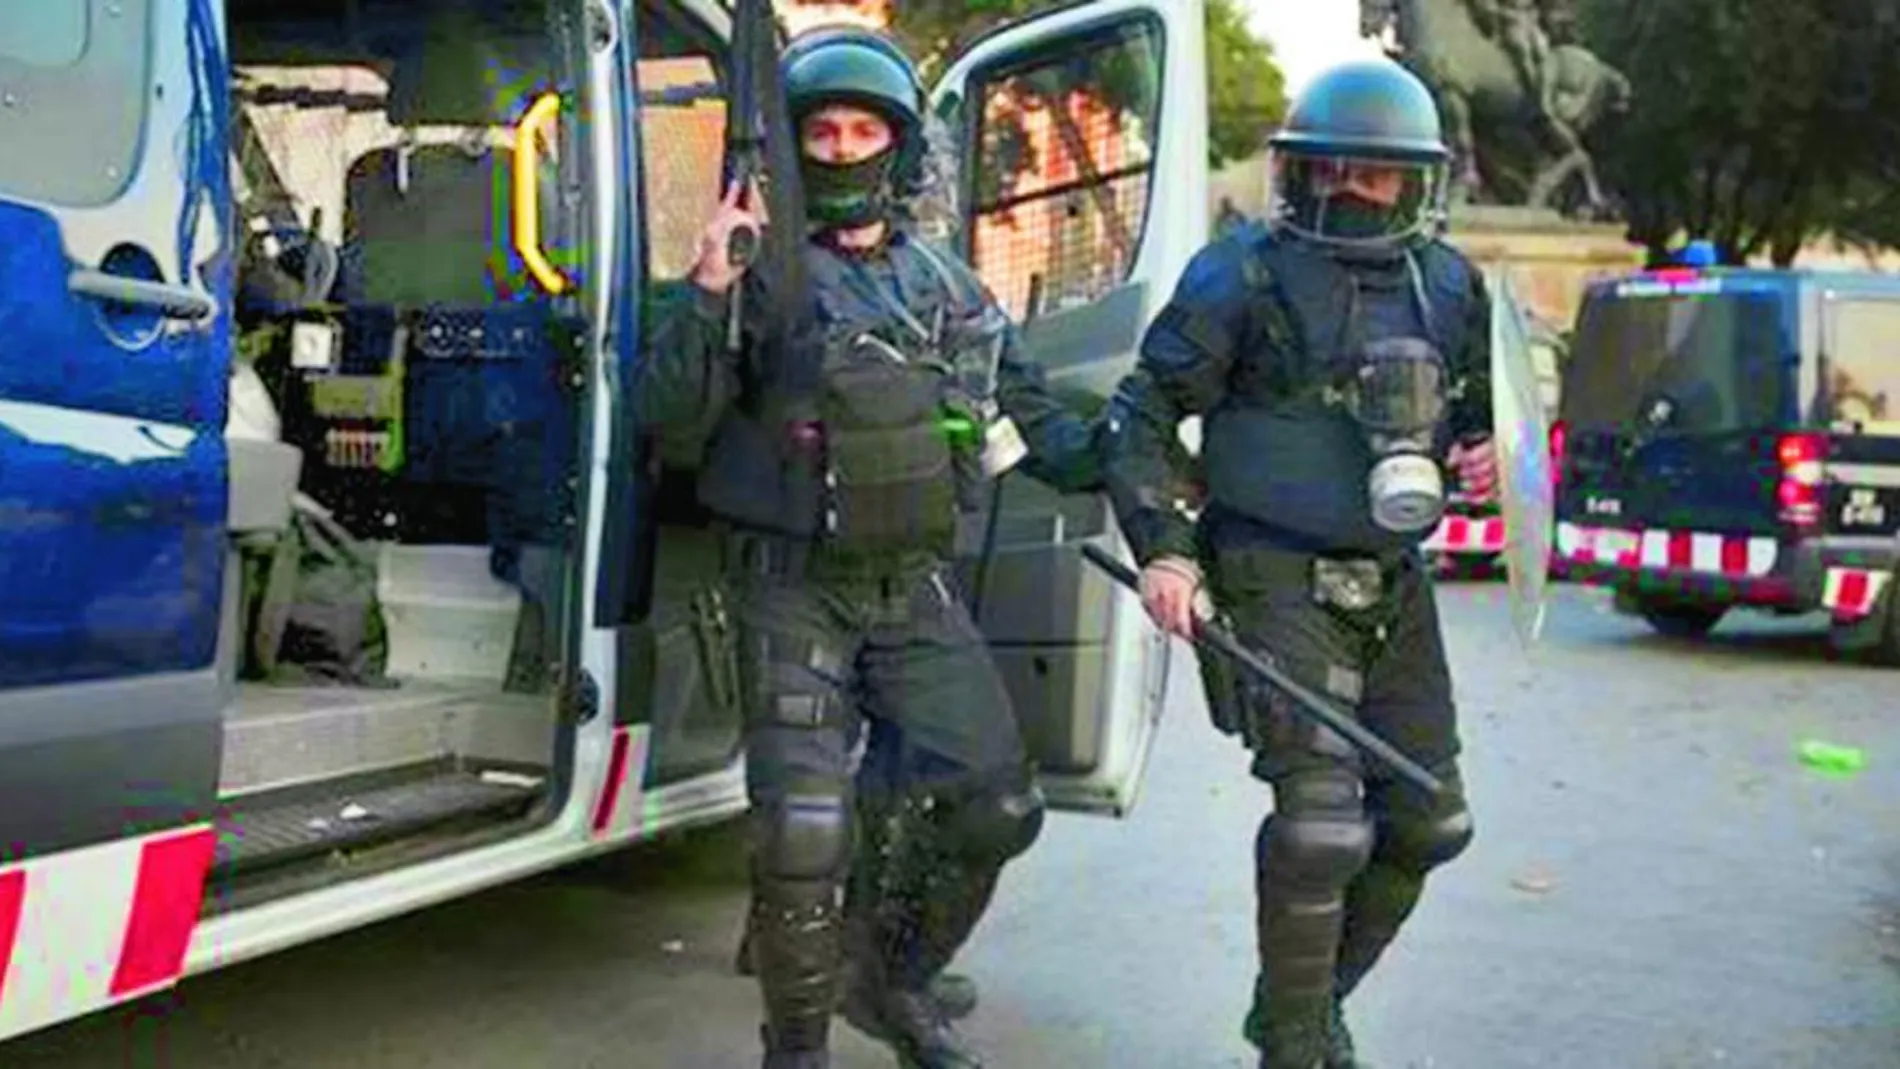 Imagen de archivo de agentes de los Mossos d'Esquadra, con sus armas reglamentarias